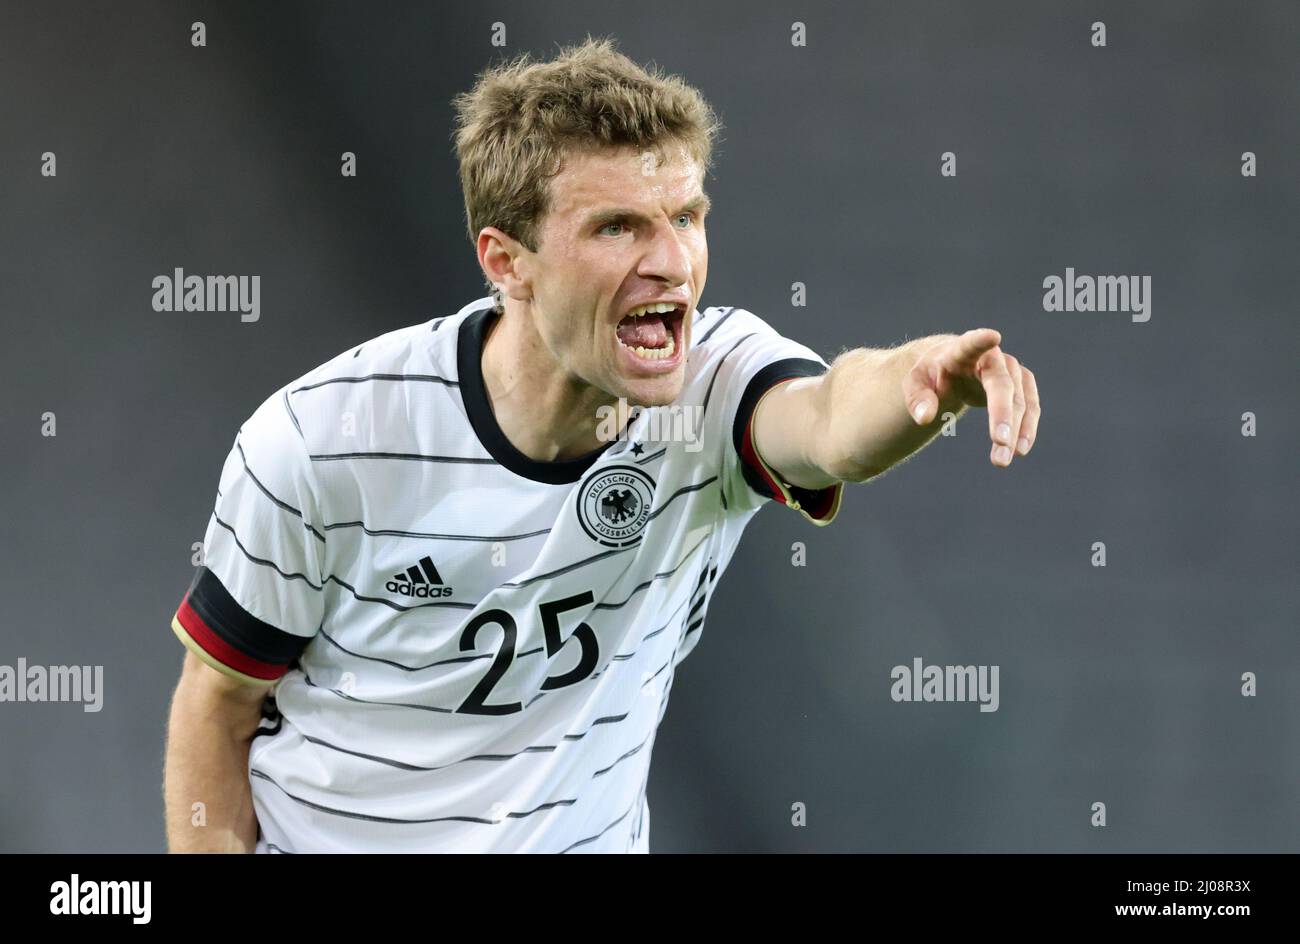 Thomas MŸller  Fussball LŠnderspiel Deutschland - DŠnemark  © diebilderwelt / Alamy Stock Stock Photo